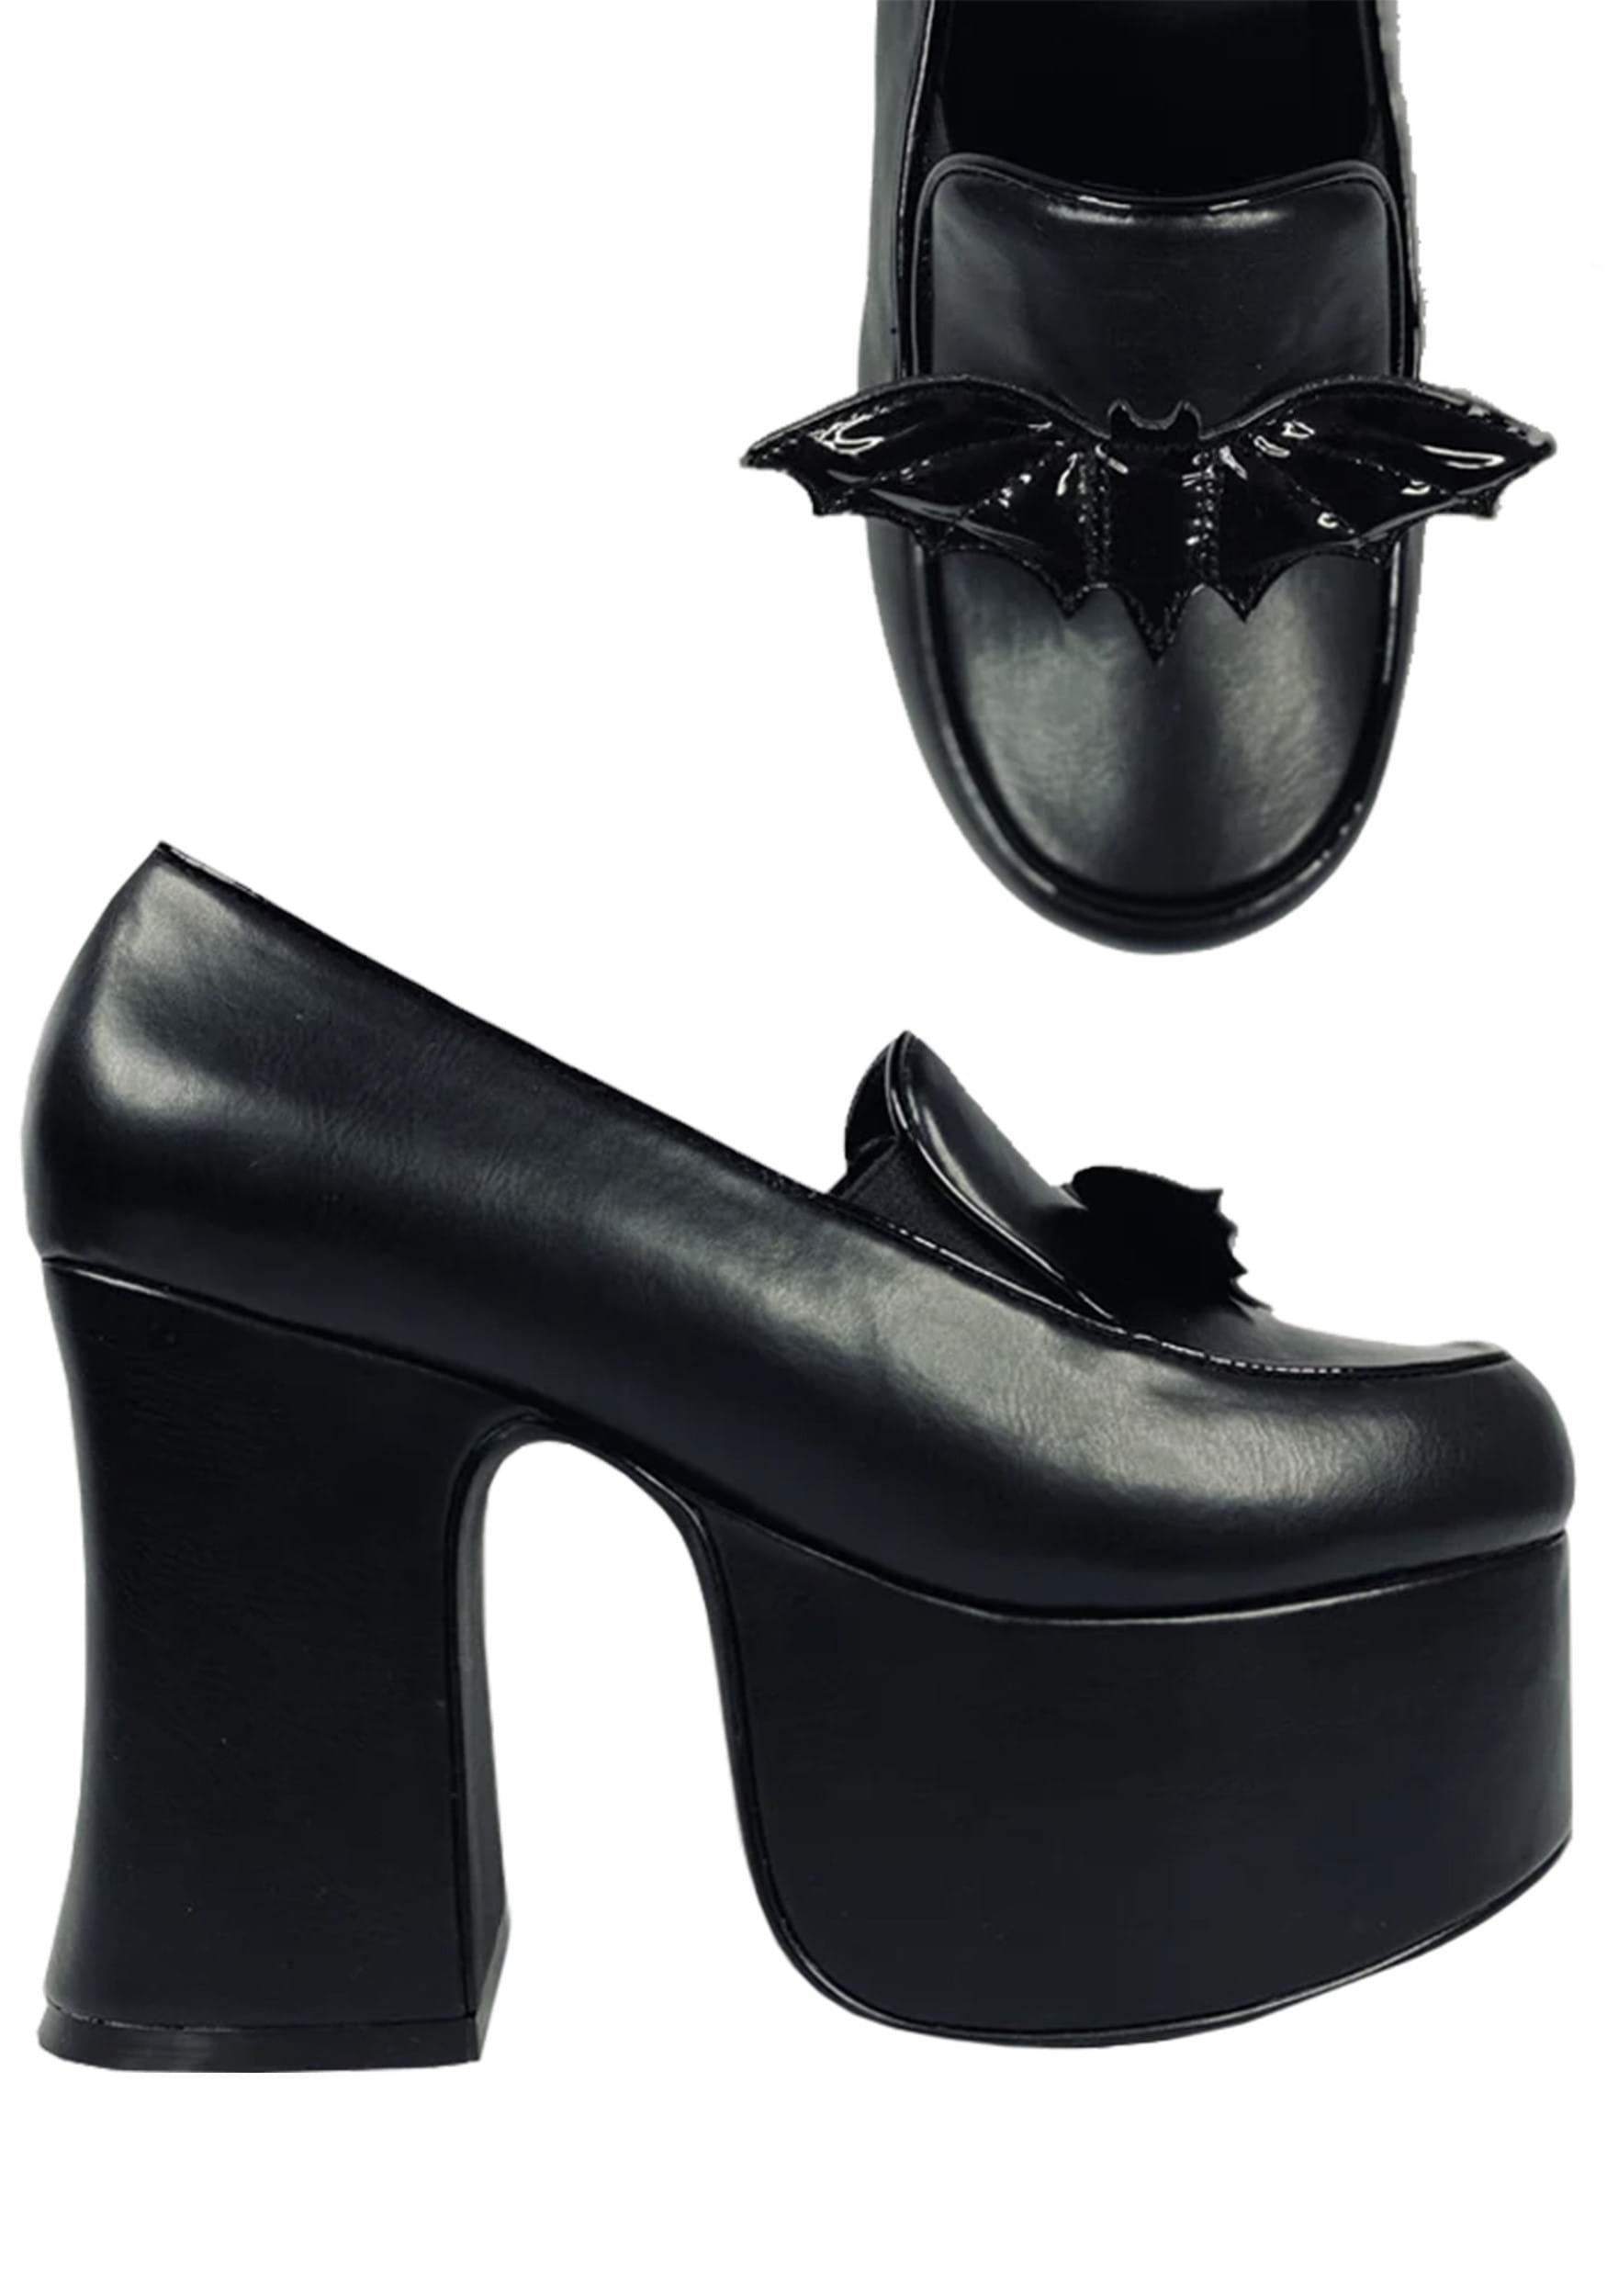 Image of Platform Bat Banshee Heels for Women ID SVBANSHEEHEEL-BAT-7